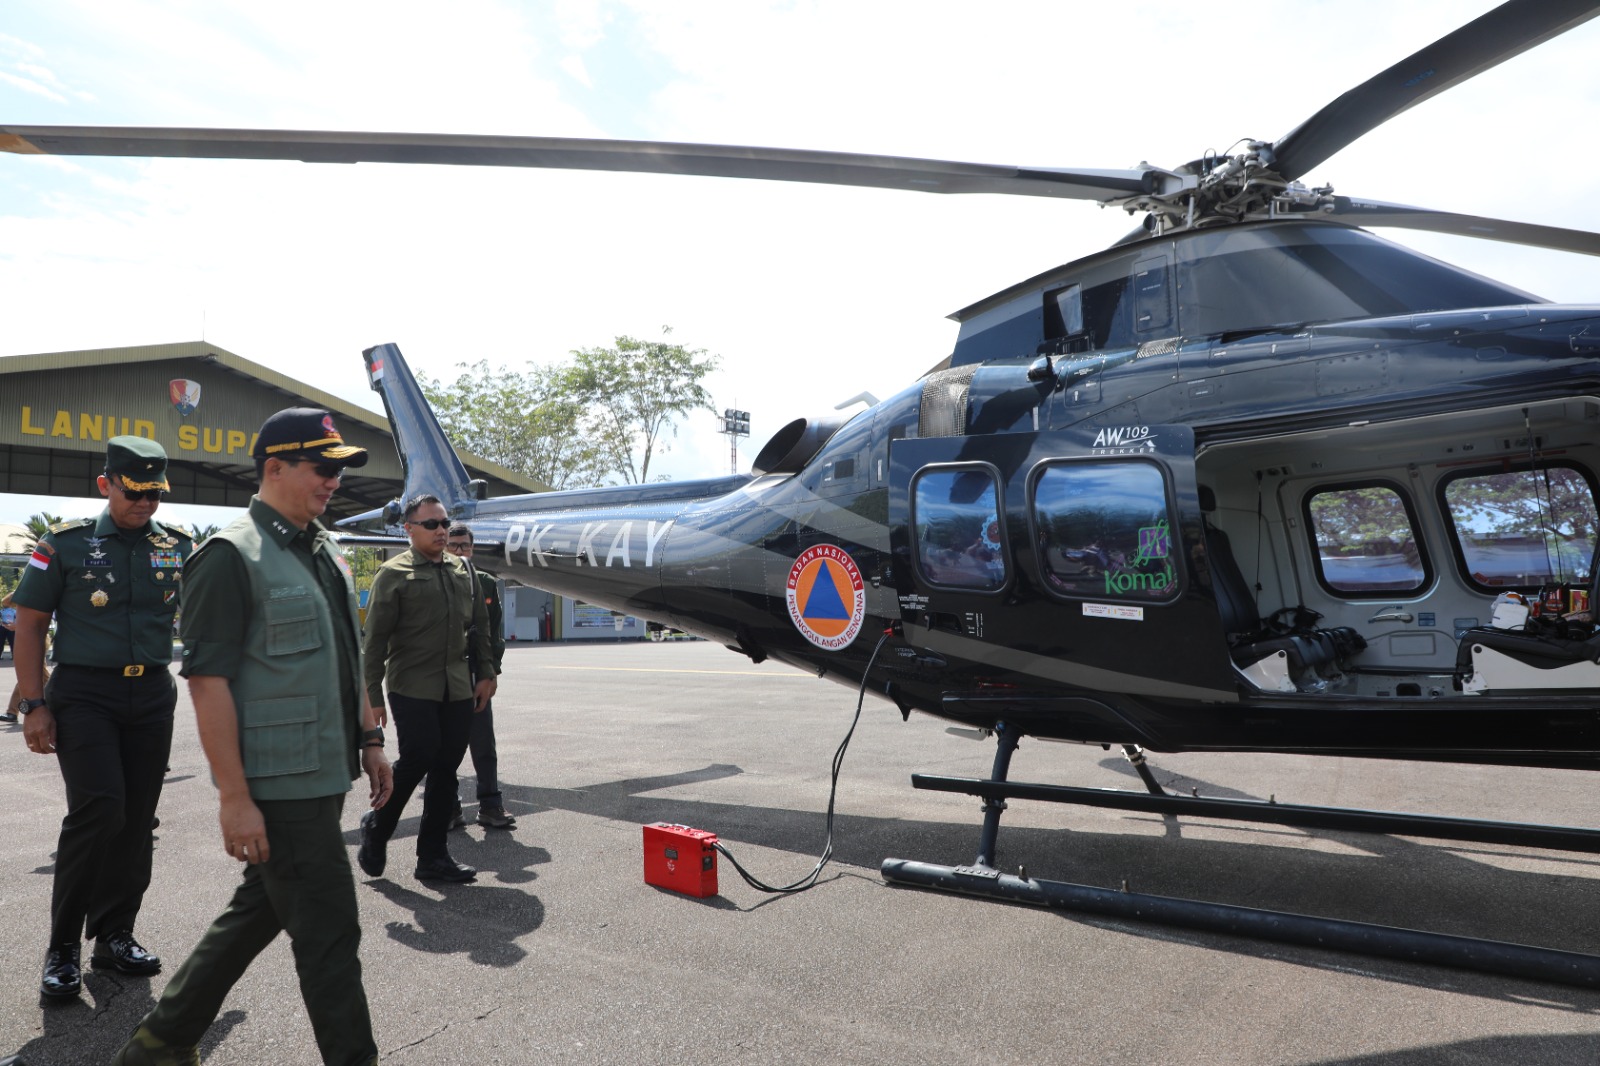 Kepala BNPB Letjen TNI Suharyanto, S.Sos., M.M (rompi hijau dan topi hitam) menuju helikopter dengan kode PK-KAY untuk melakukan patroli udara guna melihat kondisi penanganan kebakaran hutan dan lahan di wilayah Kalimantan Barat, Rabu (20/9).